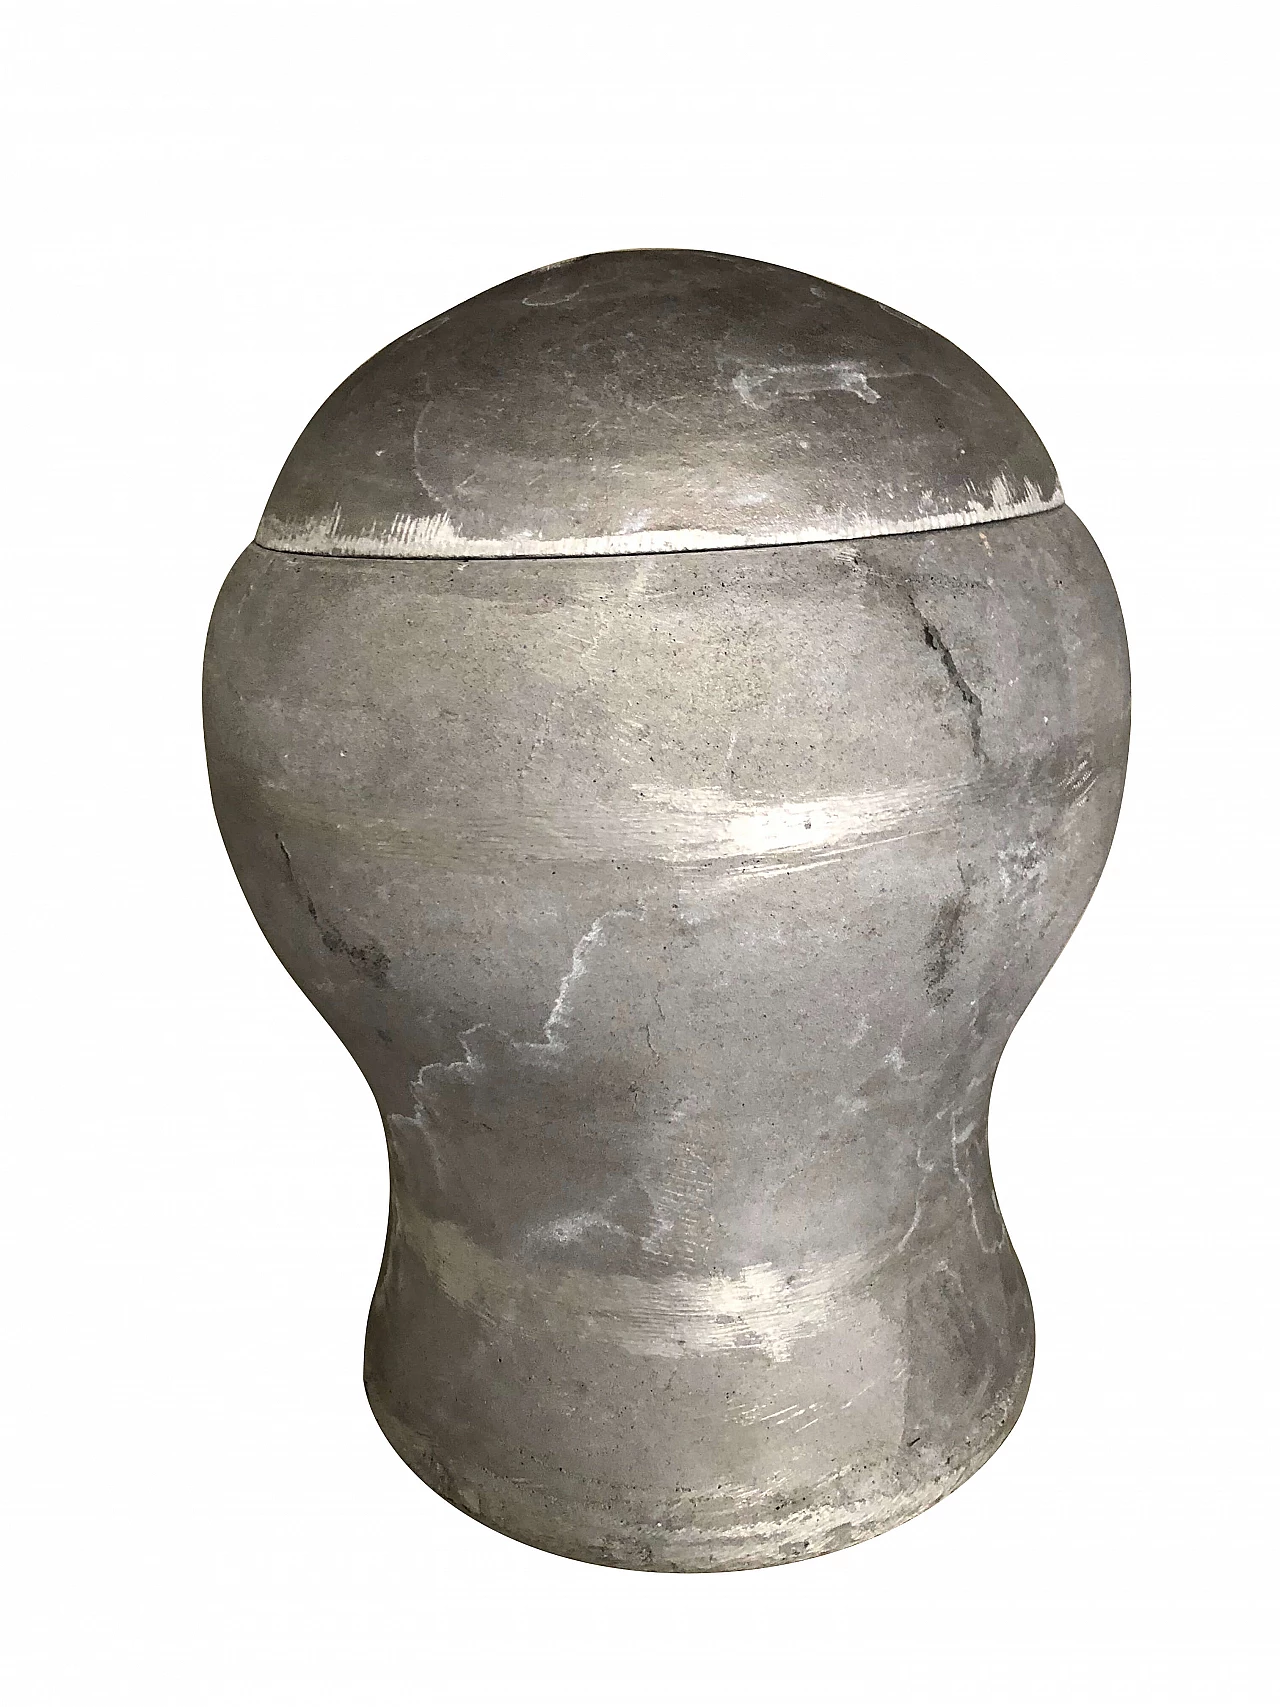 Dutch concrete vase with lid, 2000 1302337